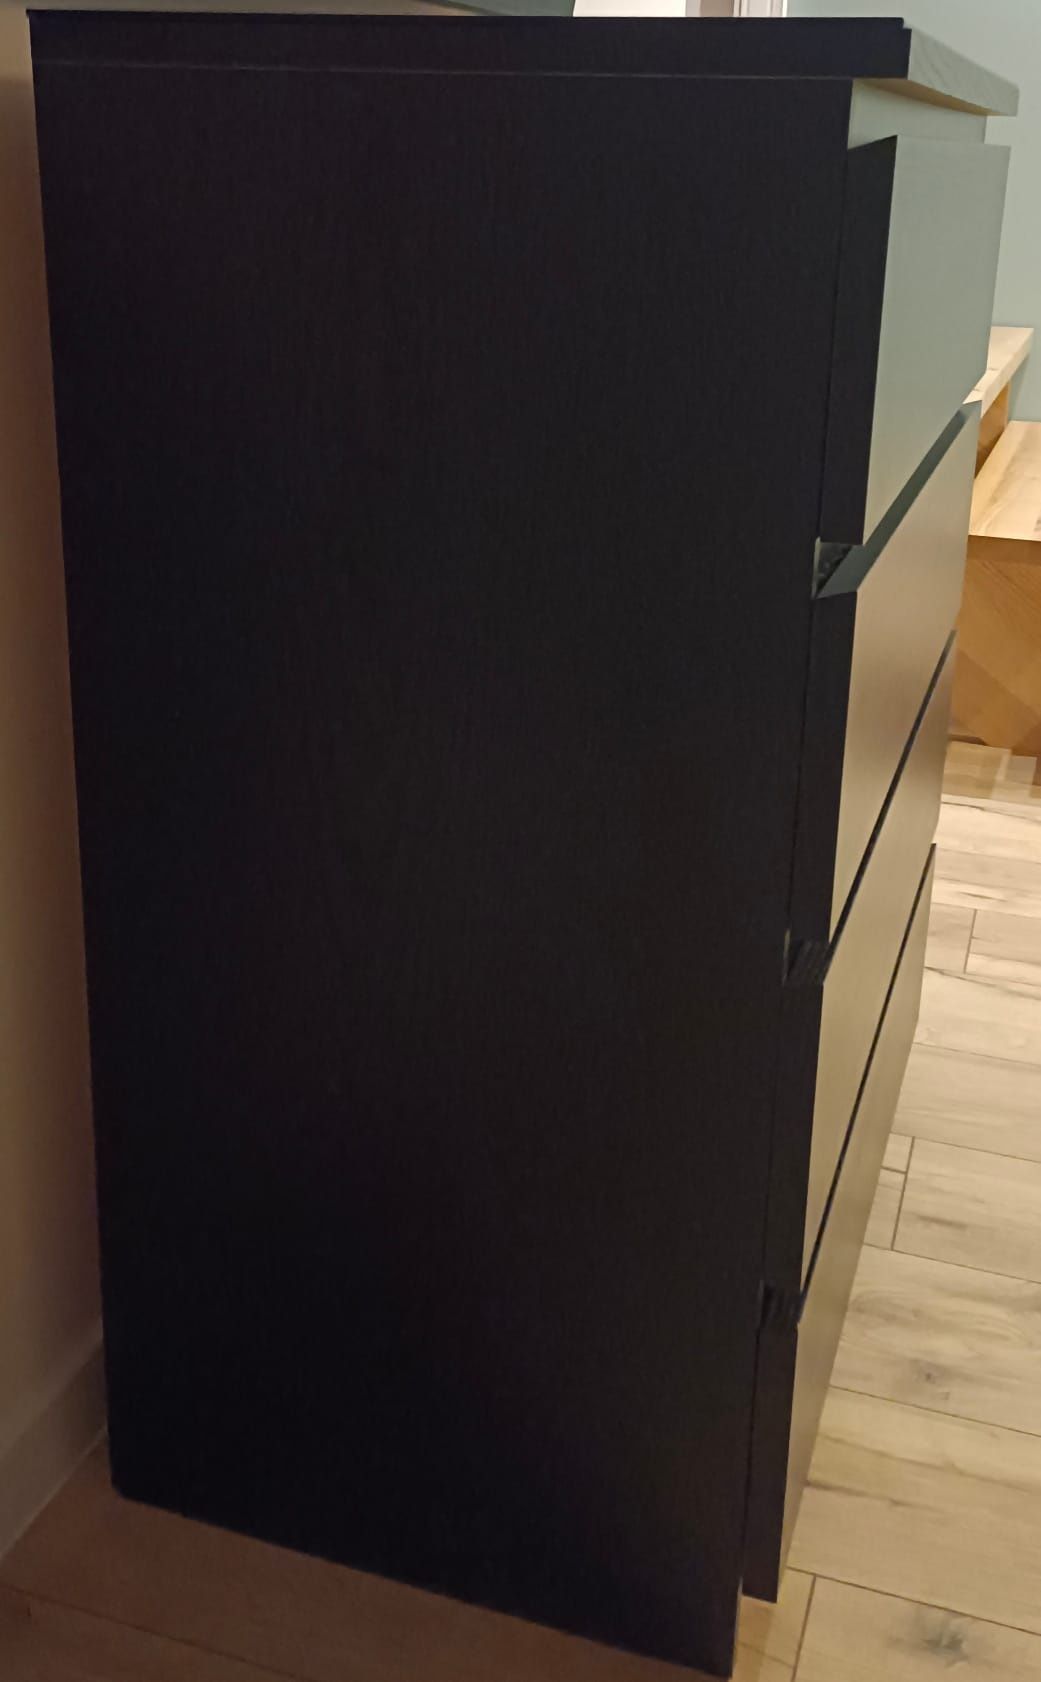 Komoda MALM IKEA 4-szuflady czarnobrąz 80x100cm